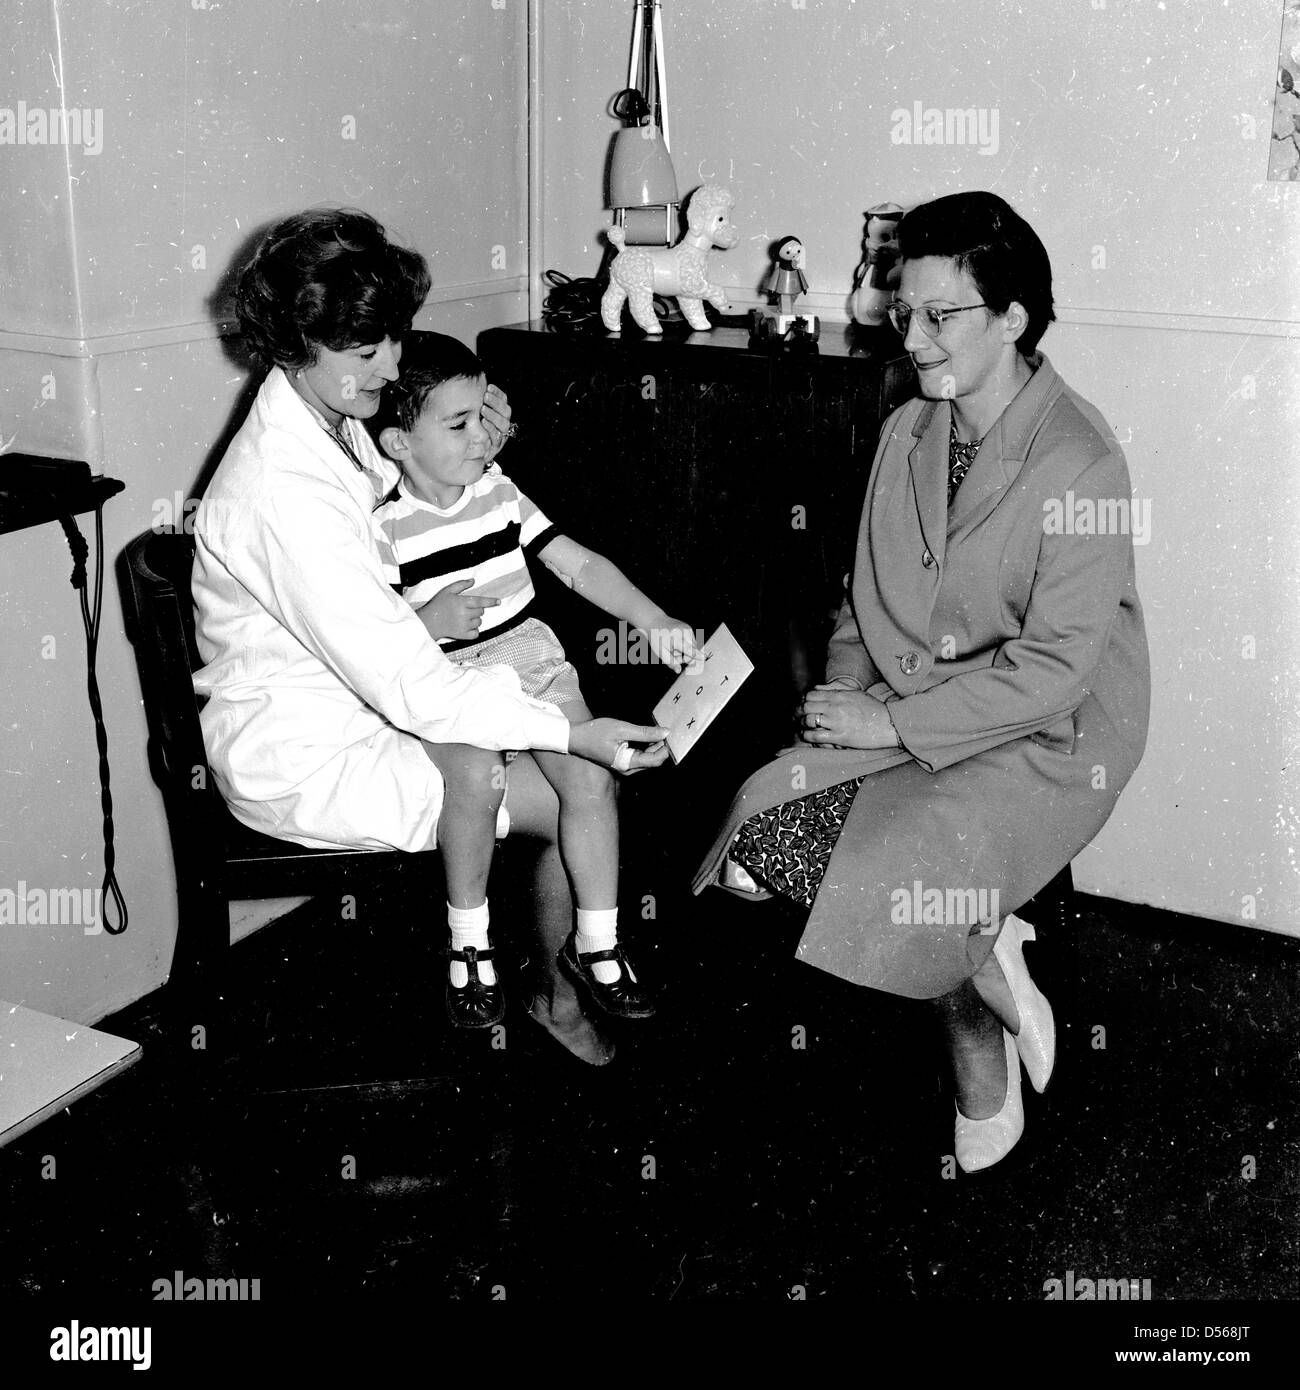 Historische, 1950er Jahre. An einem lokalen Gesundheit Klinik für ein Auge prüfen. Ein kleiner Junge sitzt auf einem weiblichen GP oder Doctor's Lap gezeigt wird, eine Karte zu lesen, mit seiner Mutter Standortwahl neben in unterstützen. Stockfoto